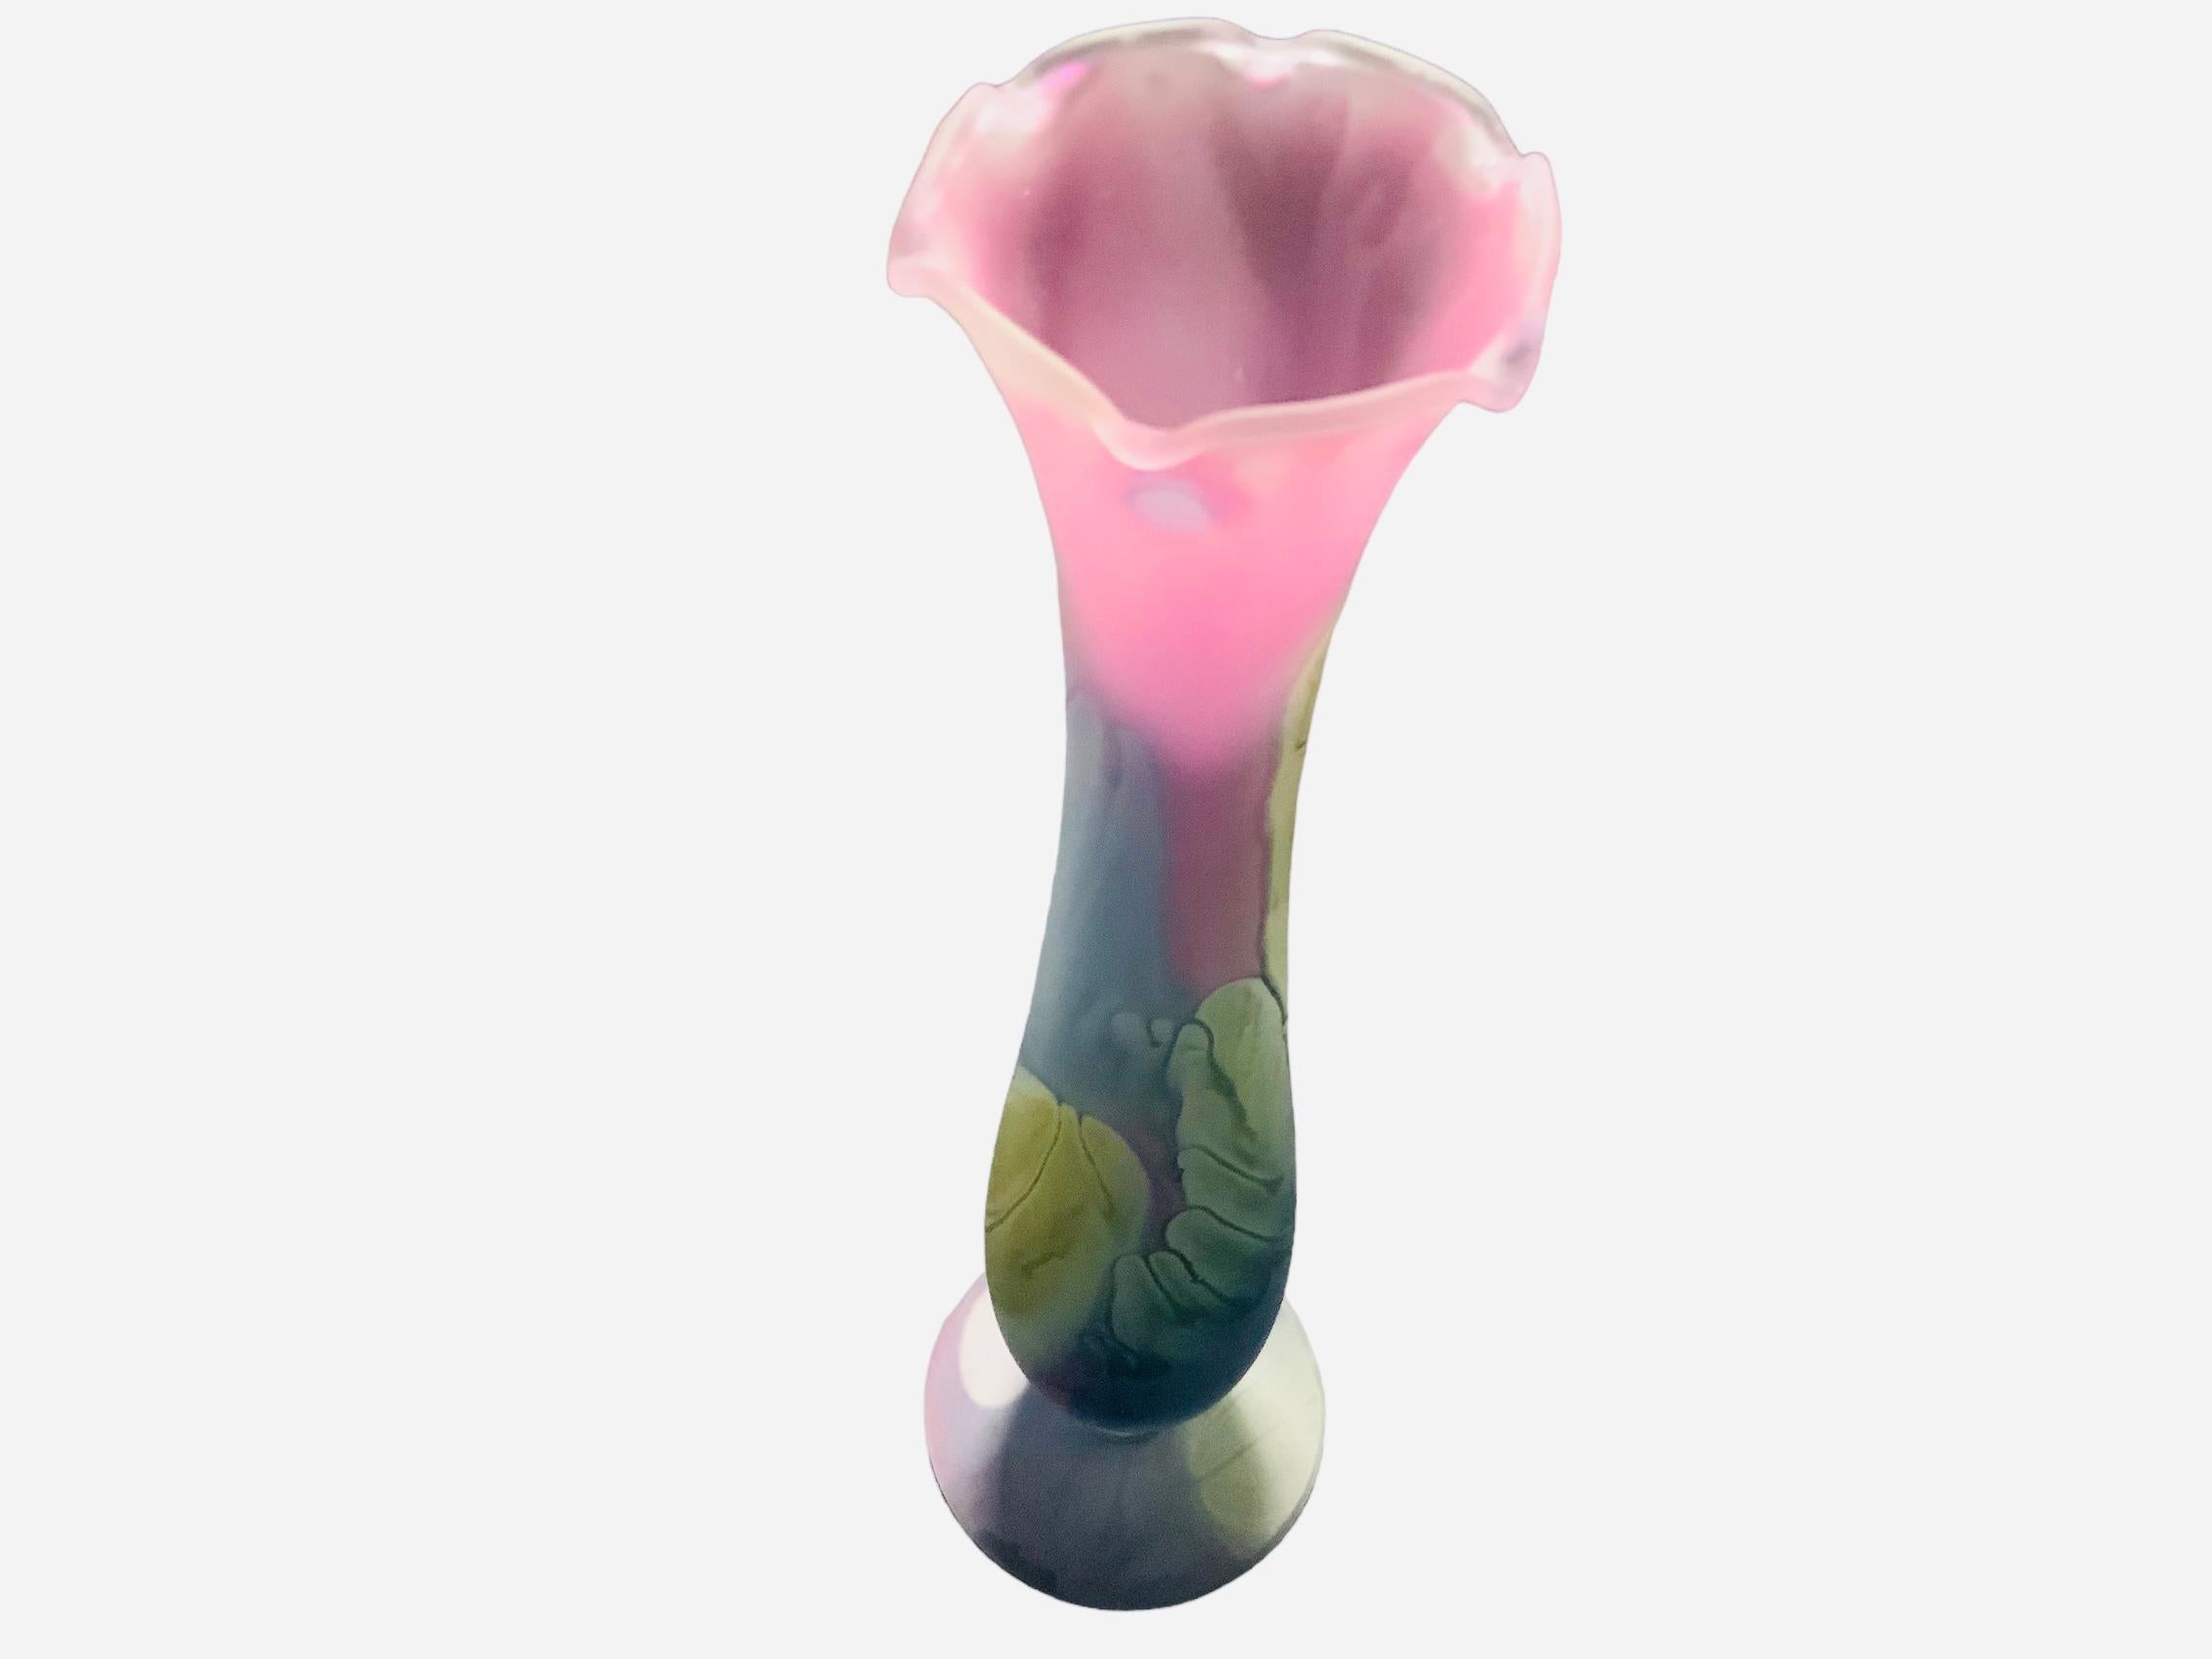 Il s'agit d'un vase à bourgeons de fleurs en verre Art Nouveau Rueven. Il représente un vase à bourgeons allongé en forme d'Amphora rose, vert-jaune et gris-bleu avec une bordure supérieure à volants. Sous la base, il s'agit du label Nouveau Art